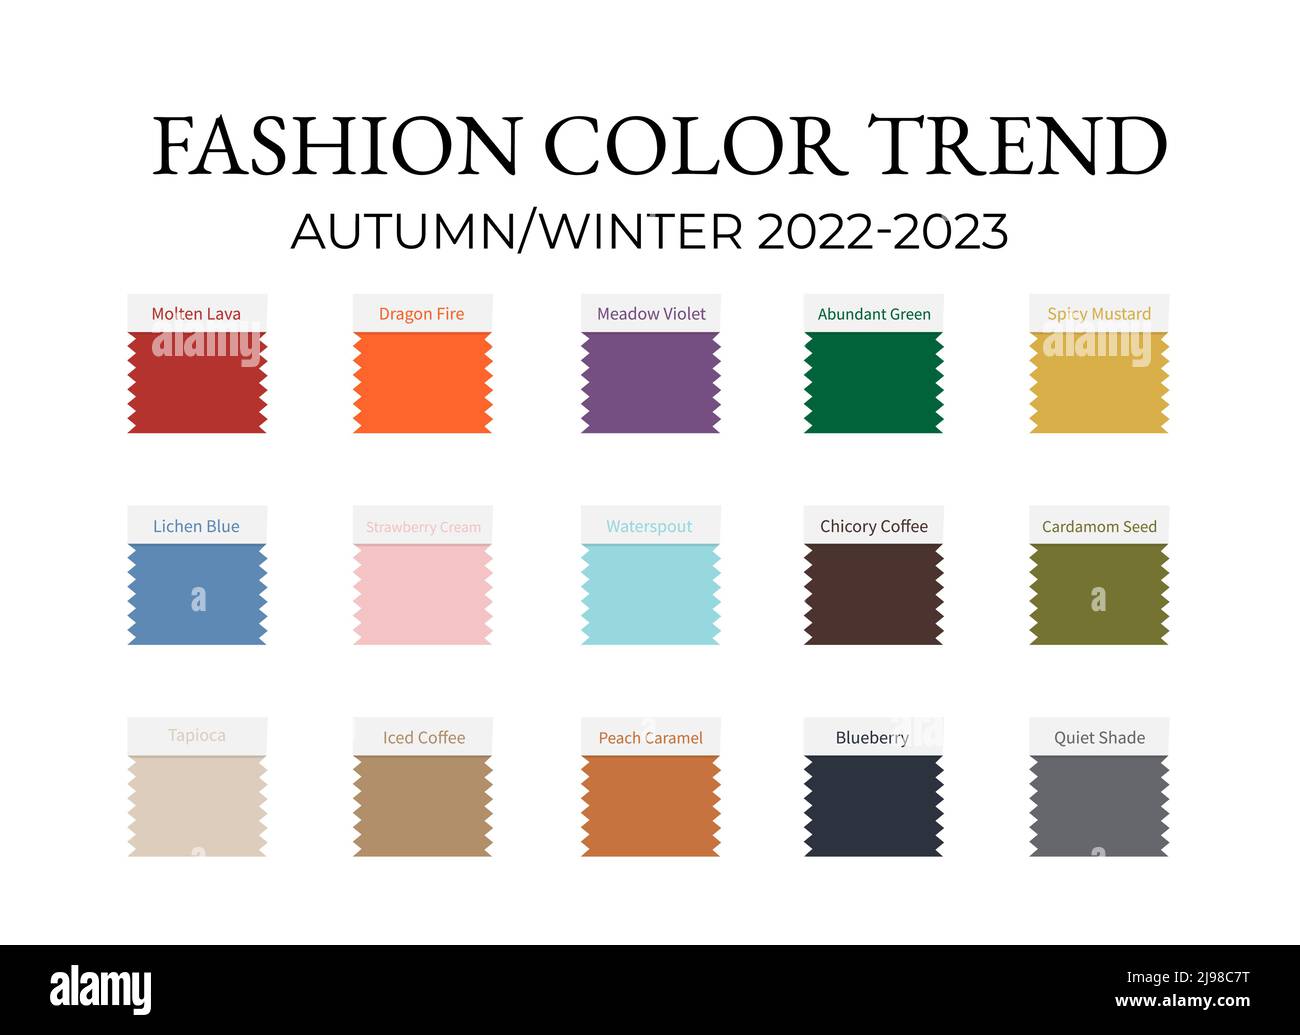 Fashion Color Trend Autumn Winter 2022 2023 Trendy Colors Palette Guide ...